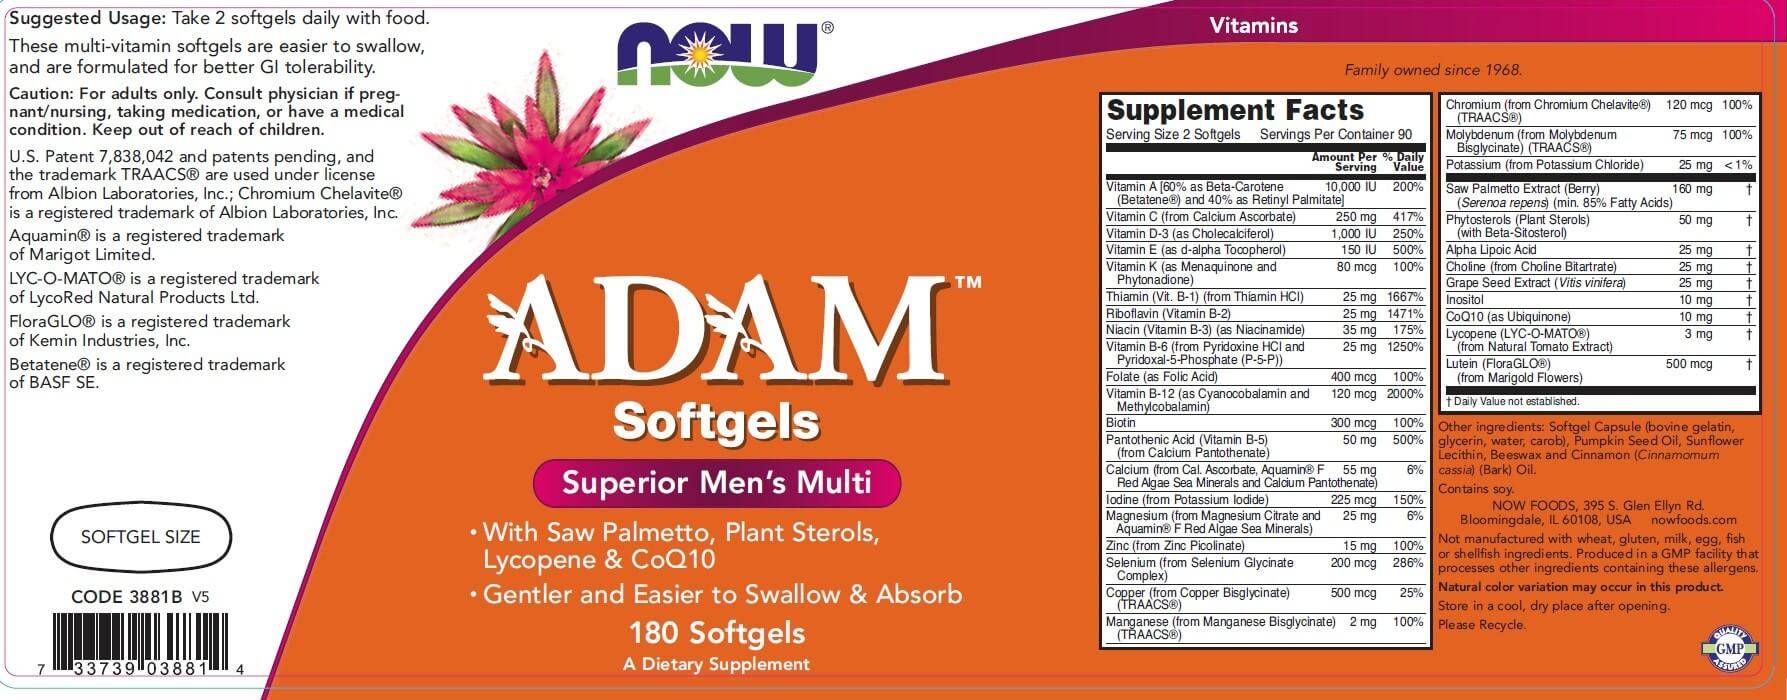 Мультивитамины adam для мужчин от now foods: инструкция, состав, как принимать